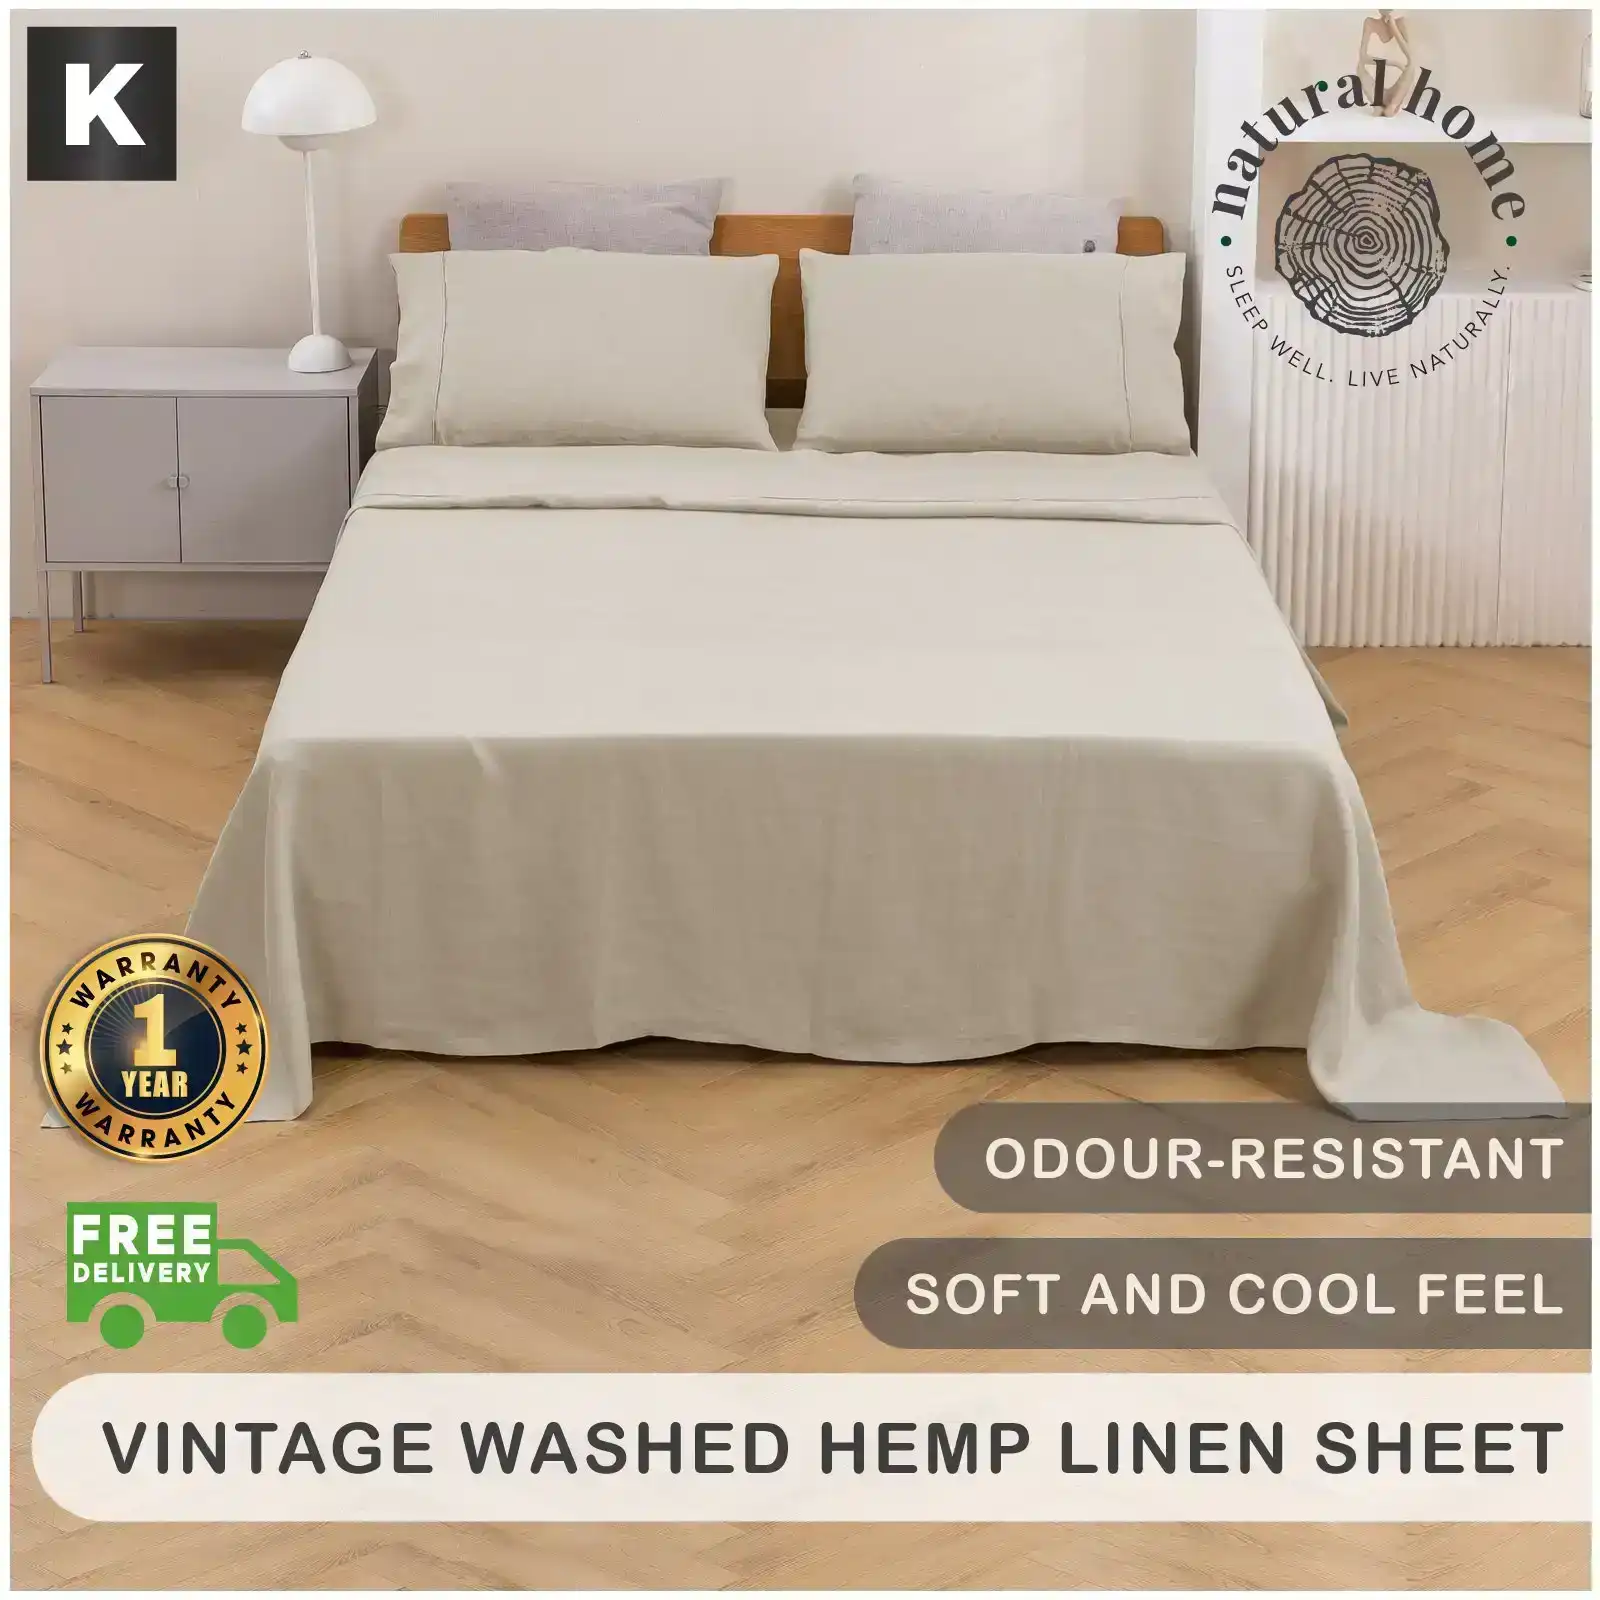 Natural Home Vintage Washed Hemp Linen Sheet Set Oatmeal King Bed